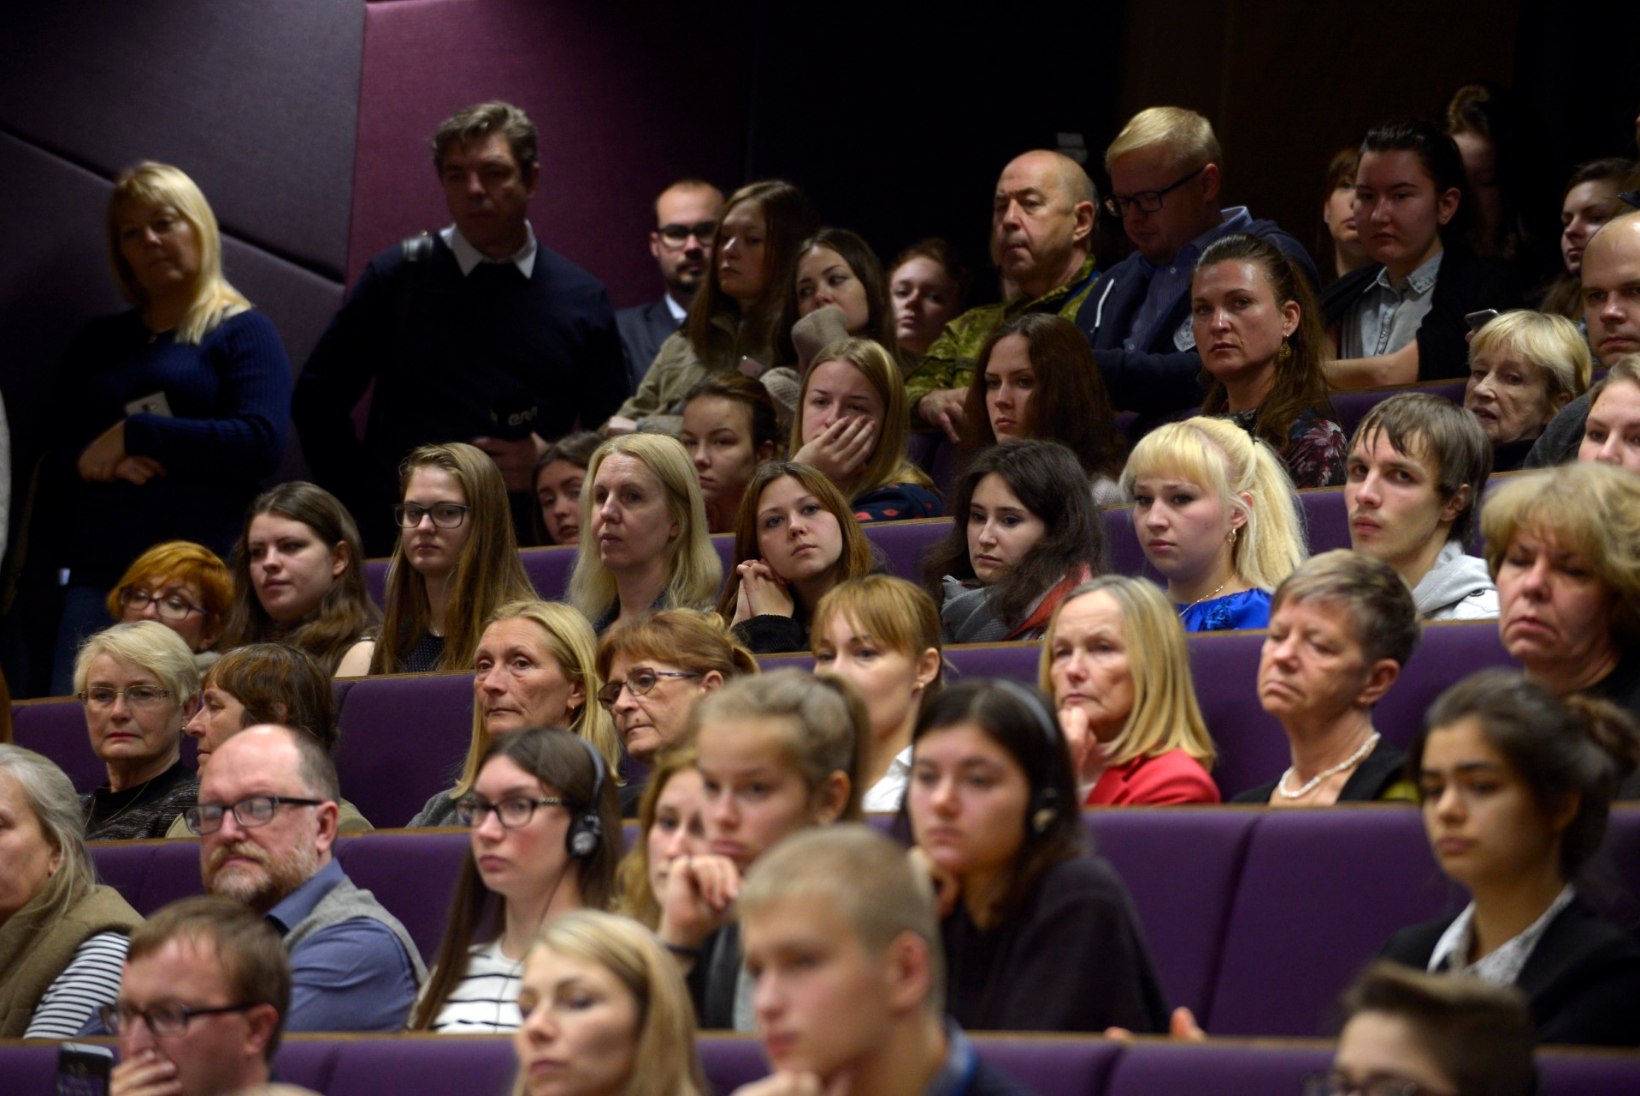 FOTOD | President Kaljulaid Ida-Virumaal: Eesti on üks kogukond